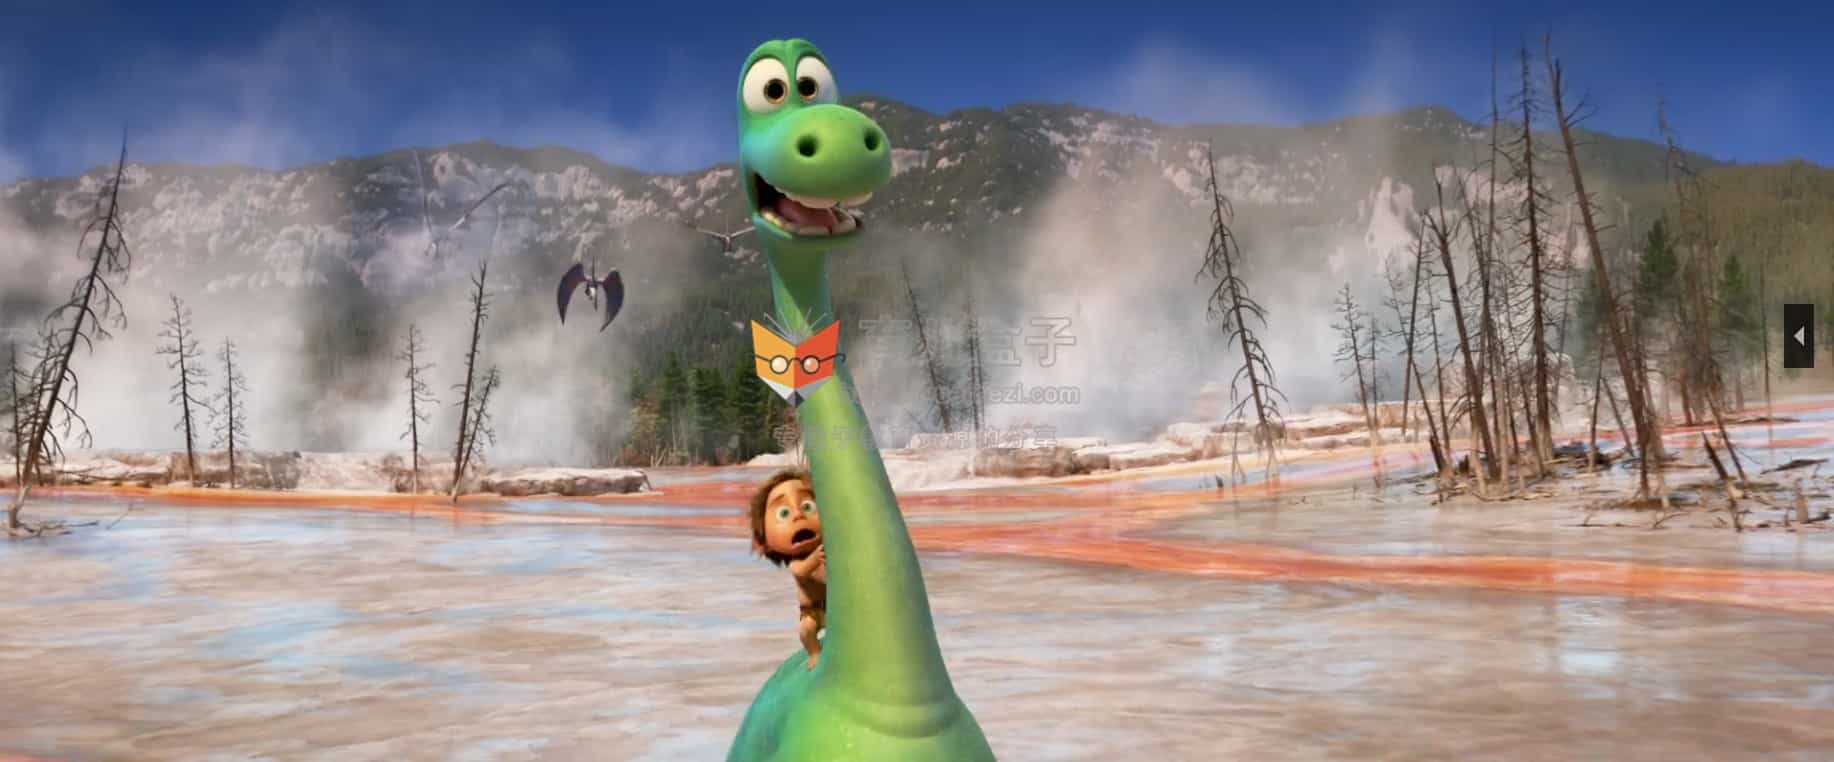 迪士尼生命教育经典动画片: 恐龙当家 The Good Dinosaur 国语版和英语版 高清视频